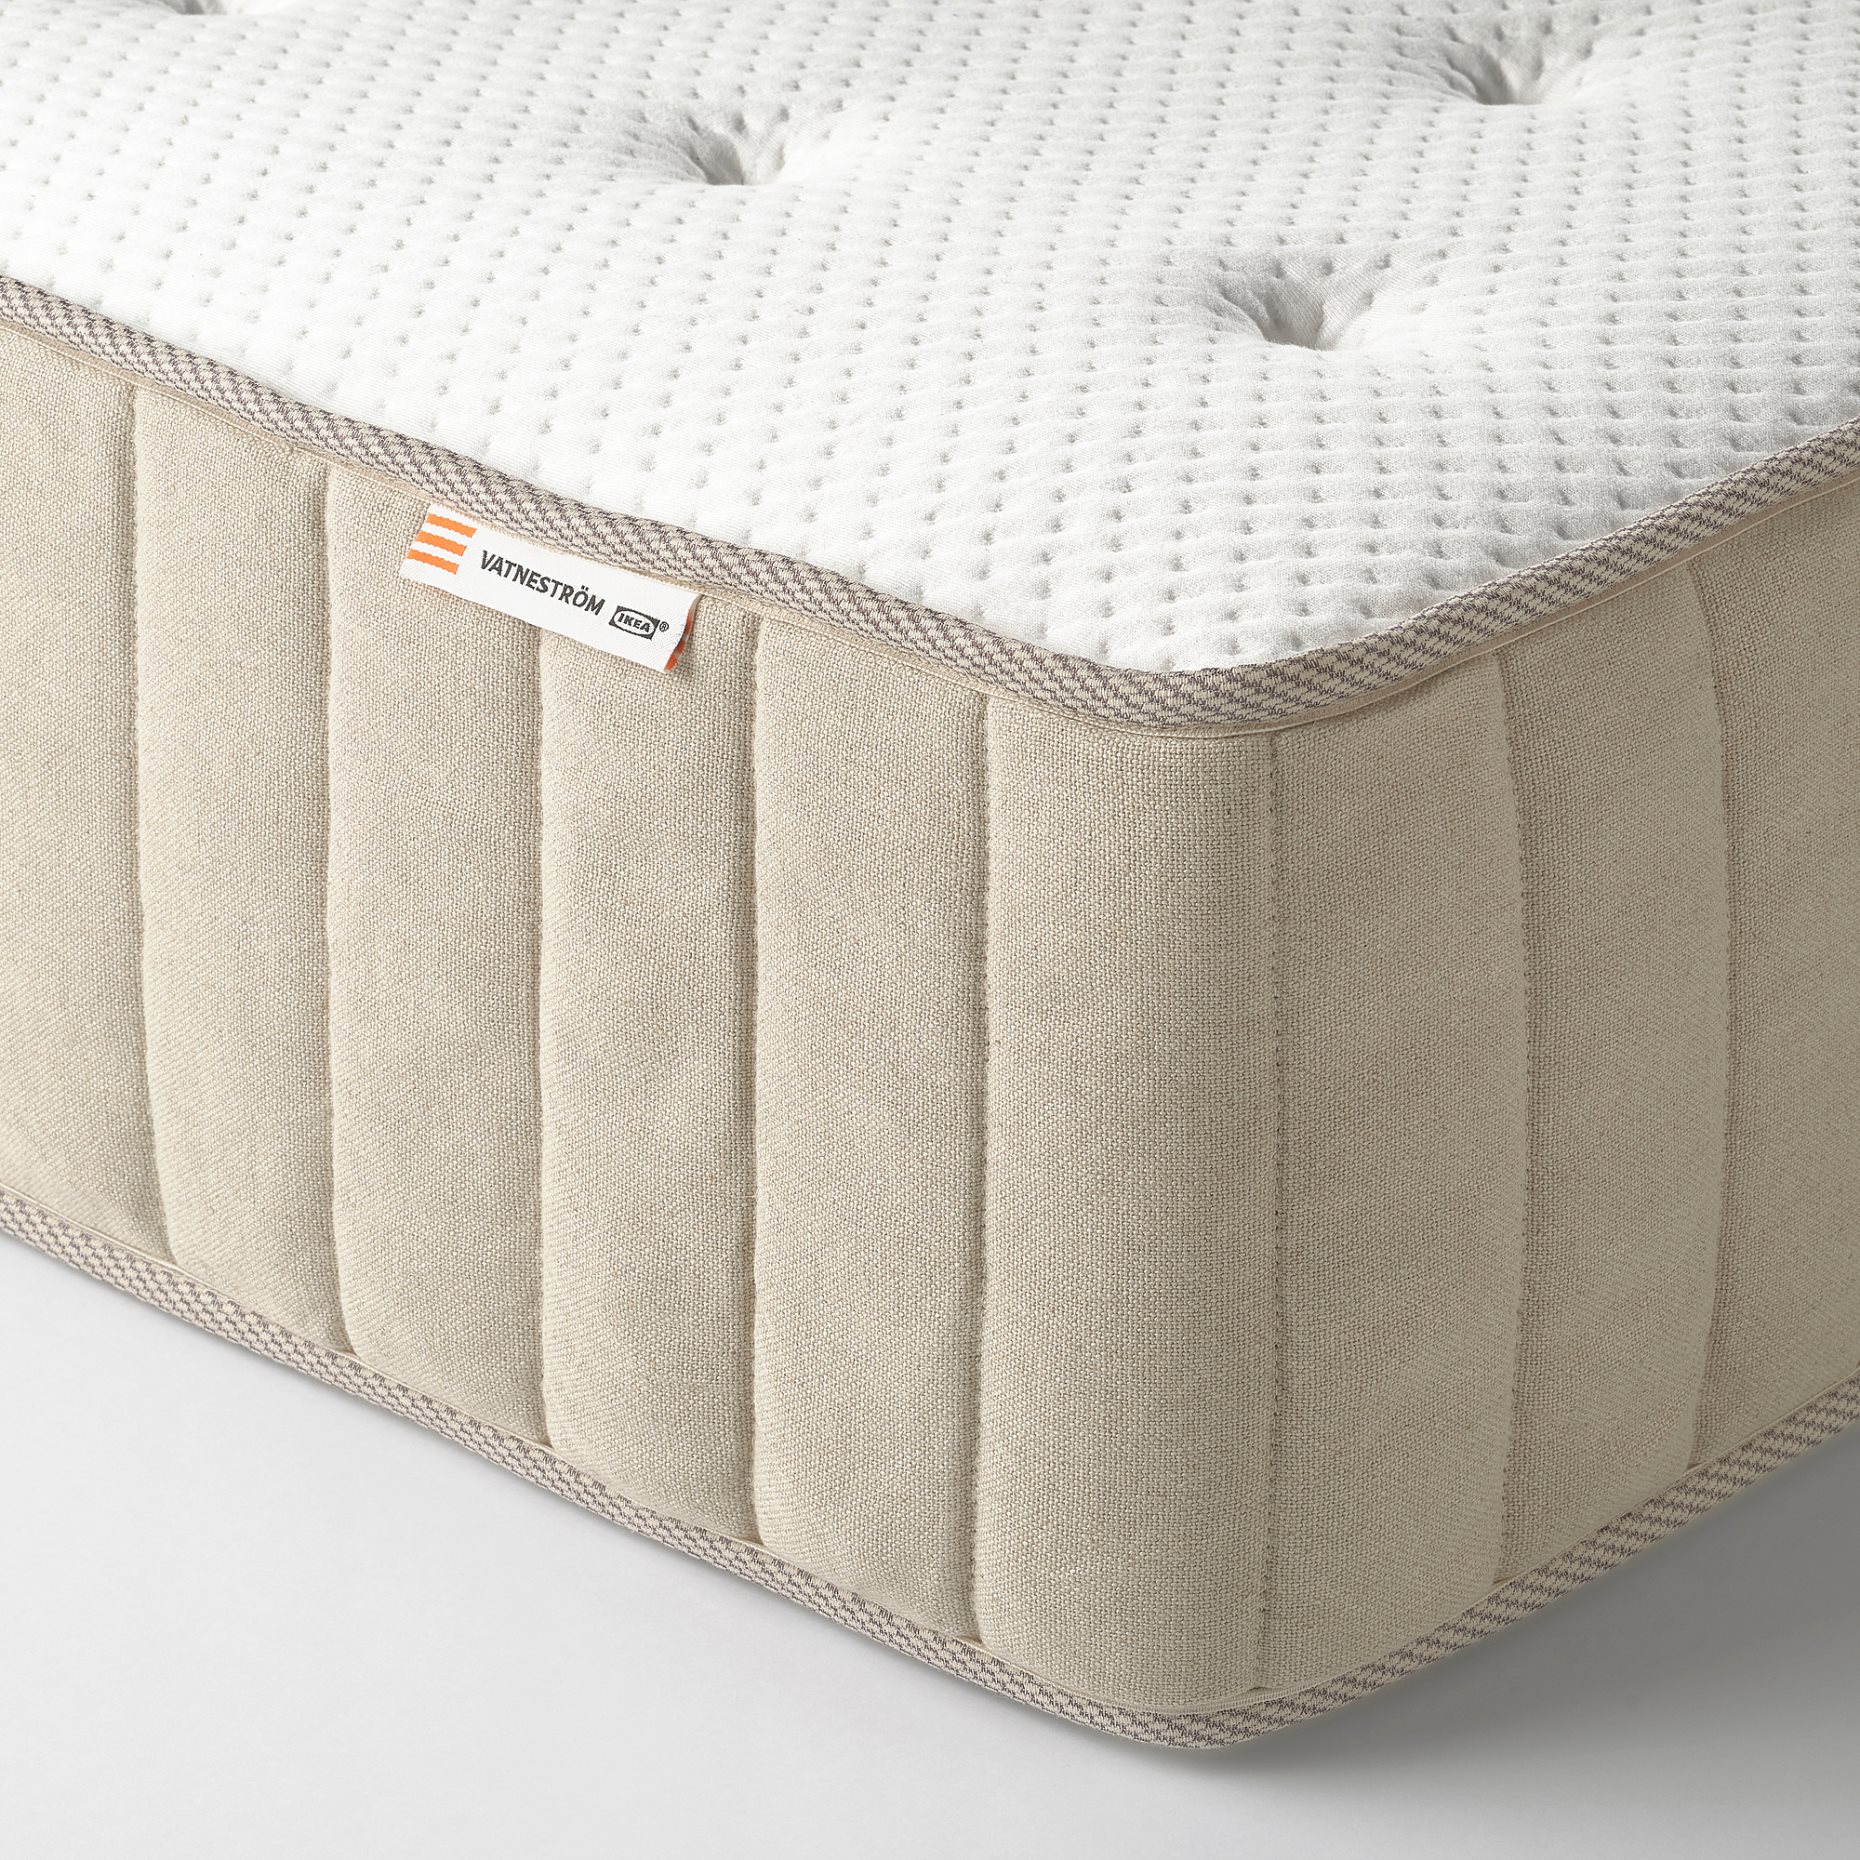 VATNESTRÖM, pocket sprung mattress, firm 180x200 cm, 604.764.10